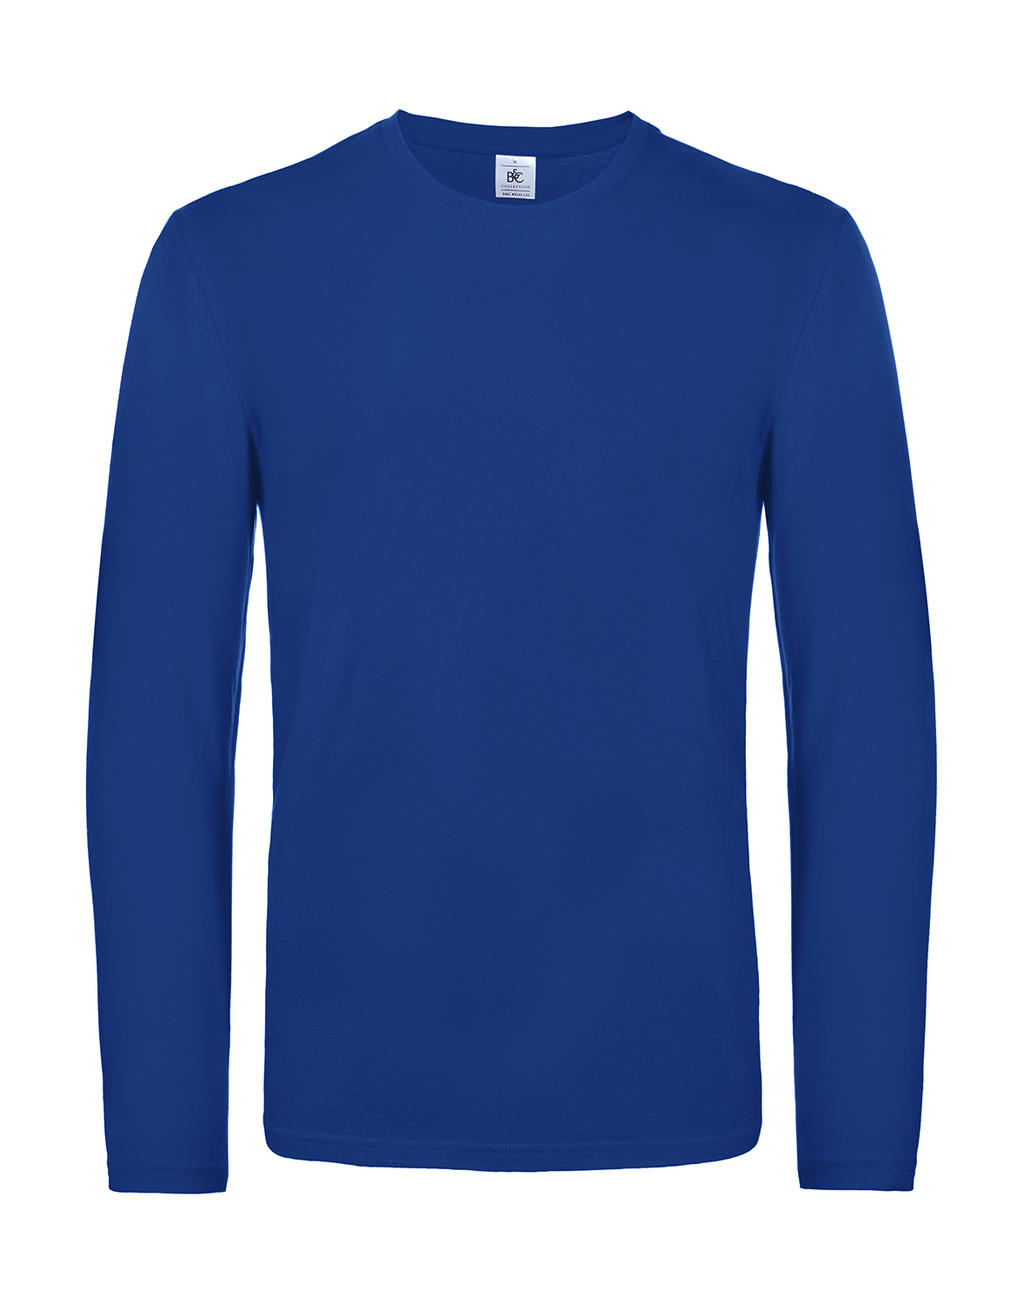 Tričko s dlhými rukávmi #E190 - royal blue